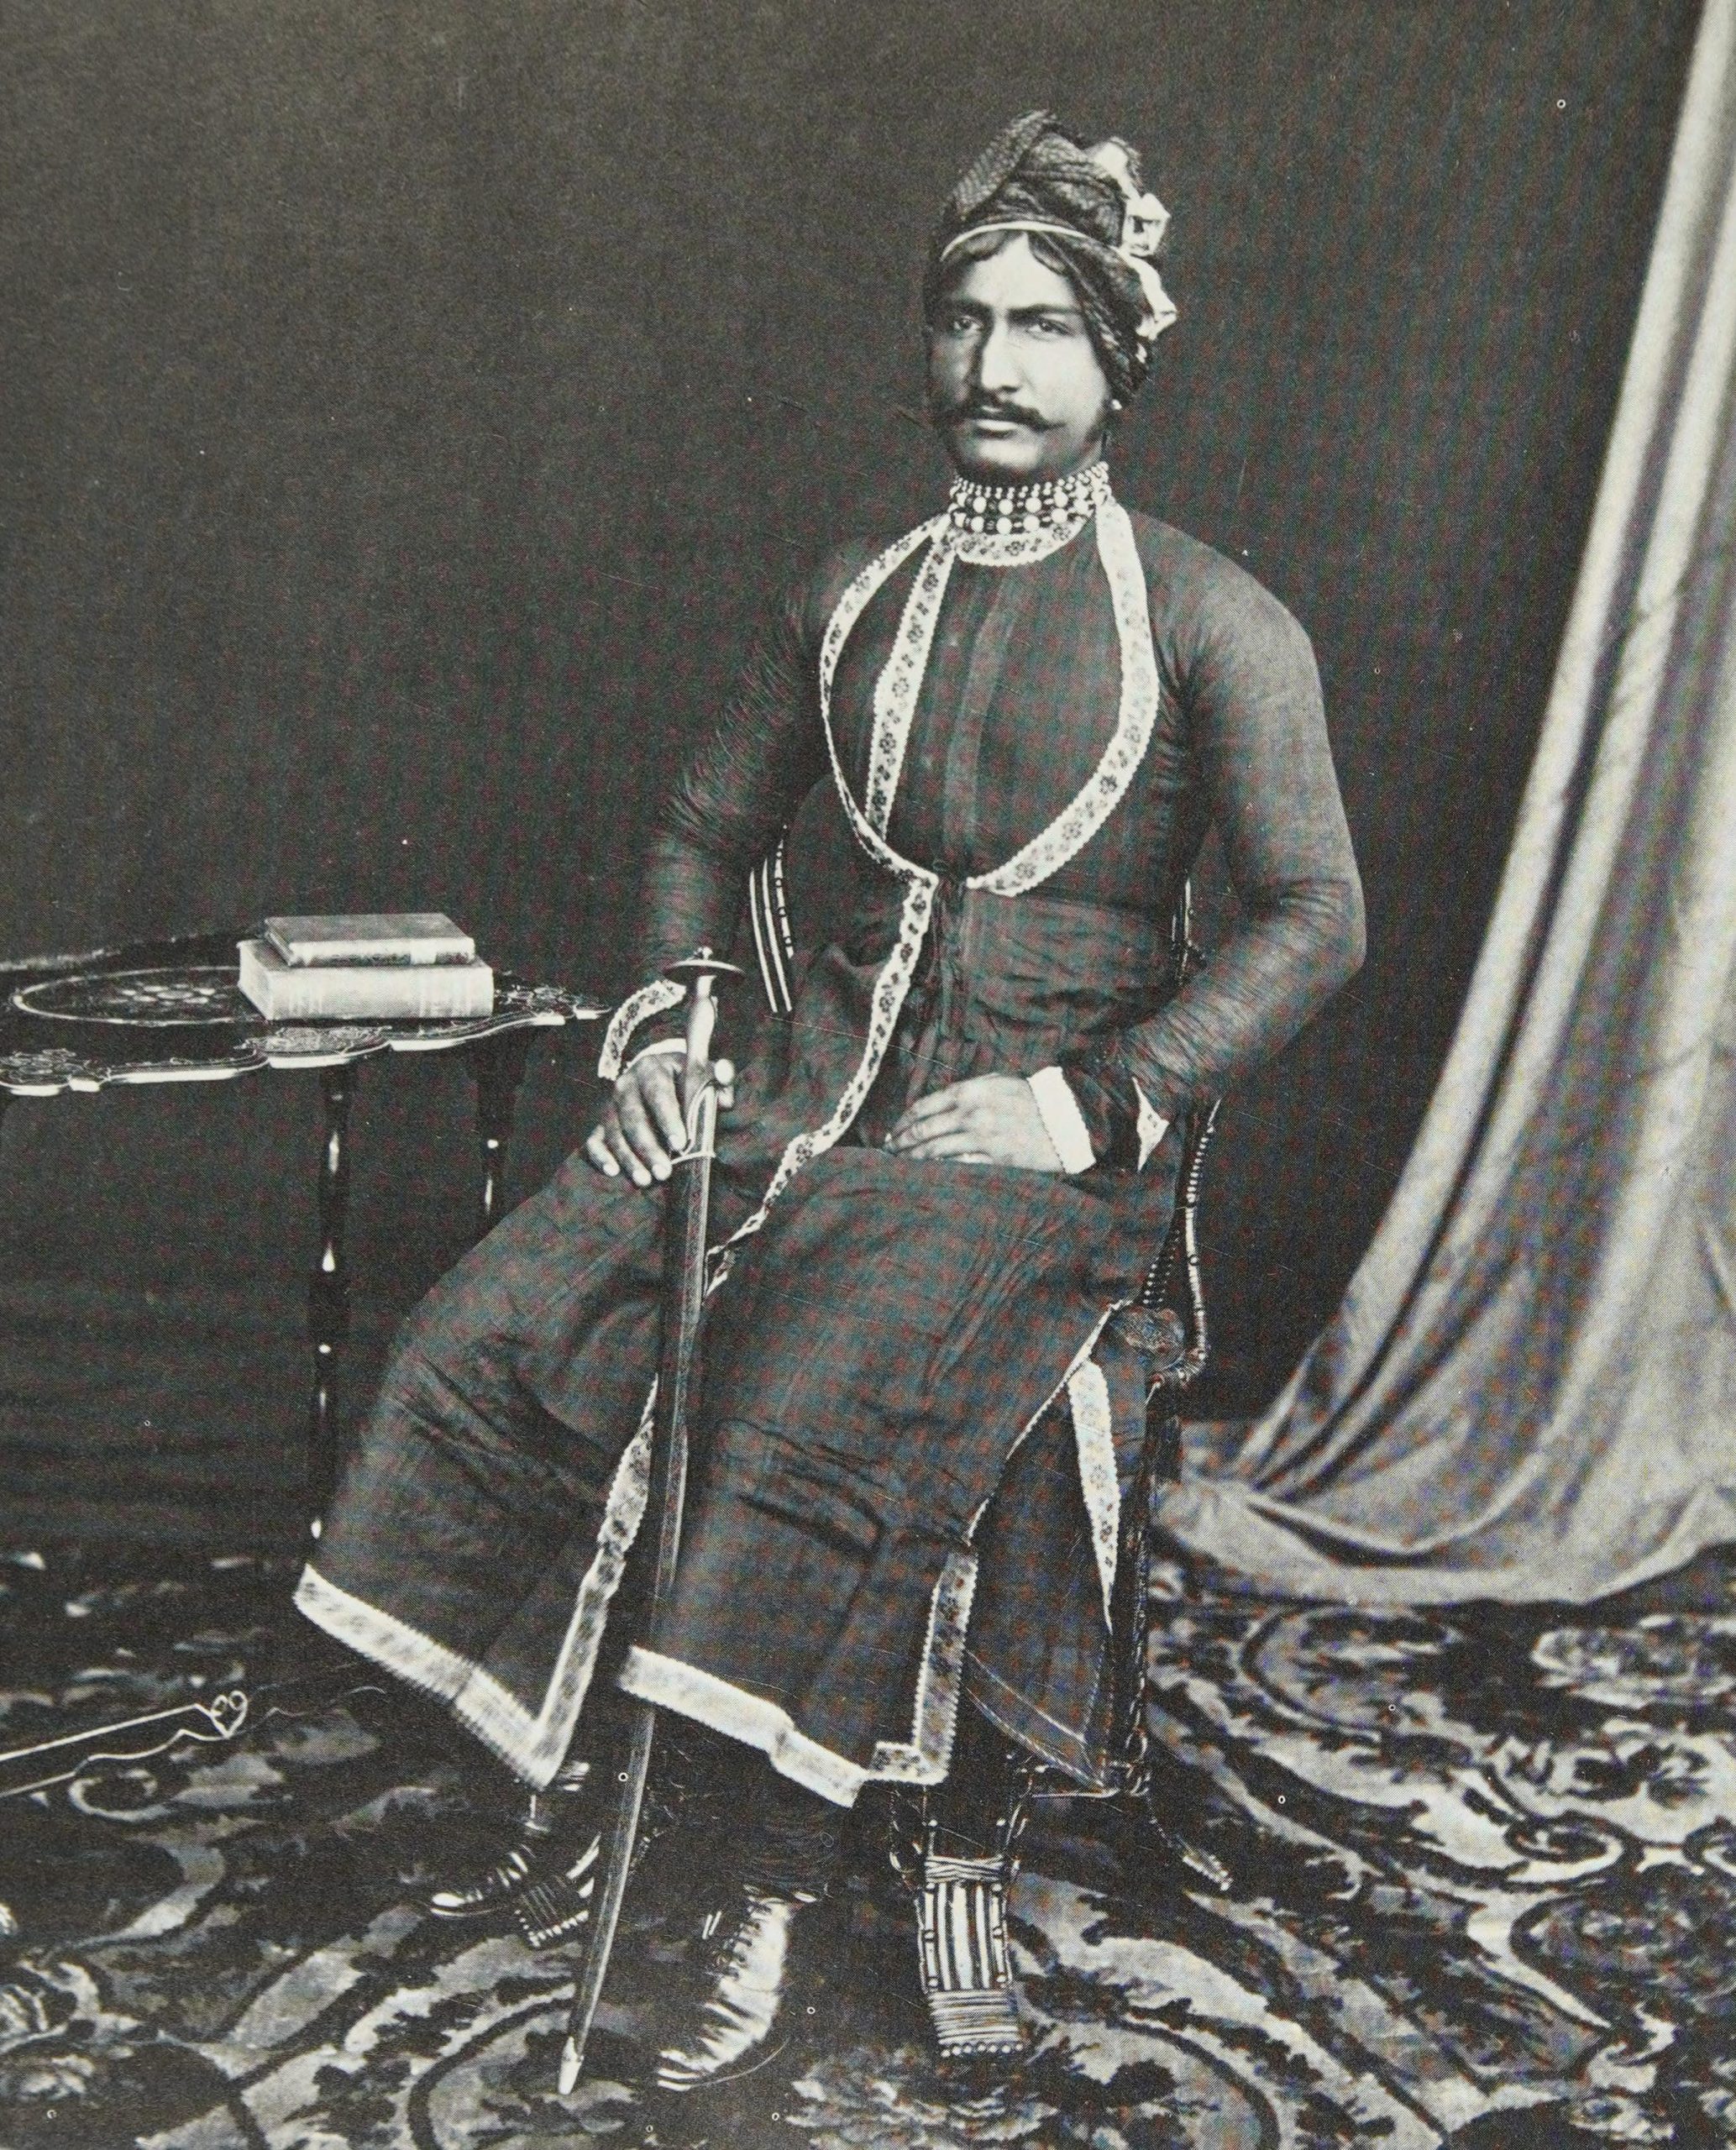 Maharaja of Alwar, Mangal Singh Prabhakar, G.C.S.I.